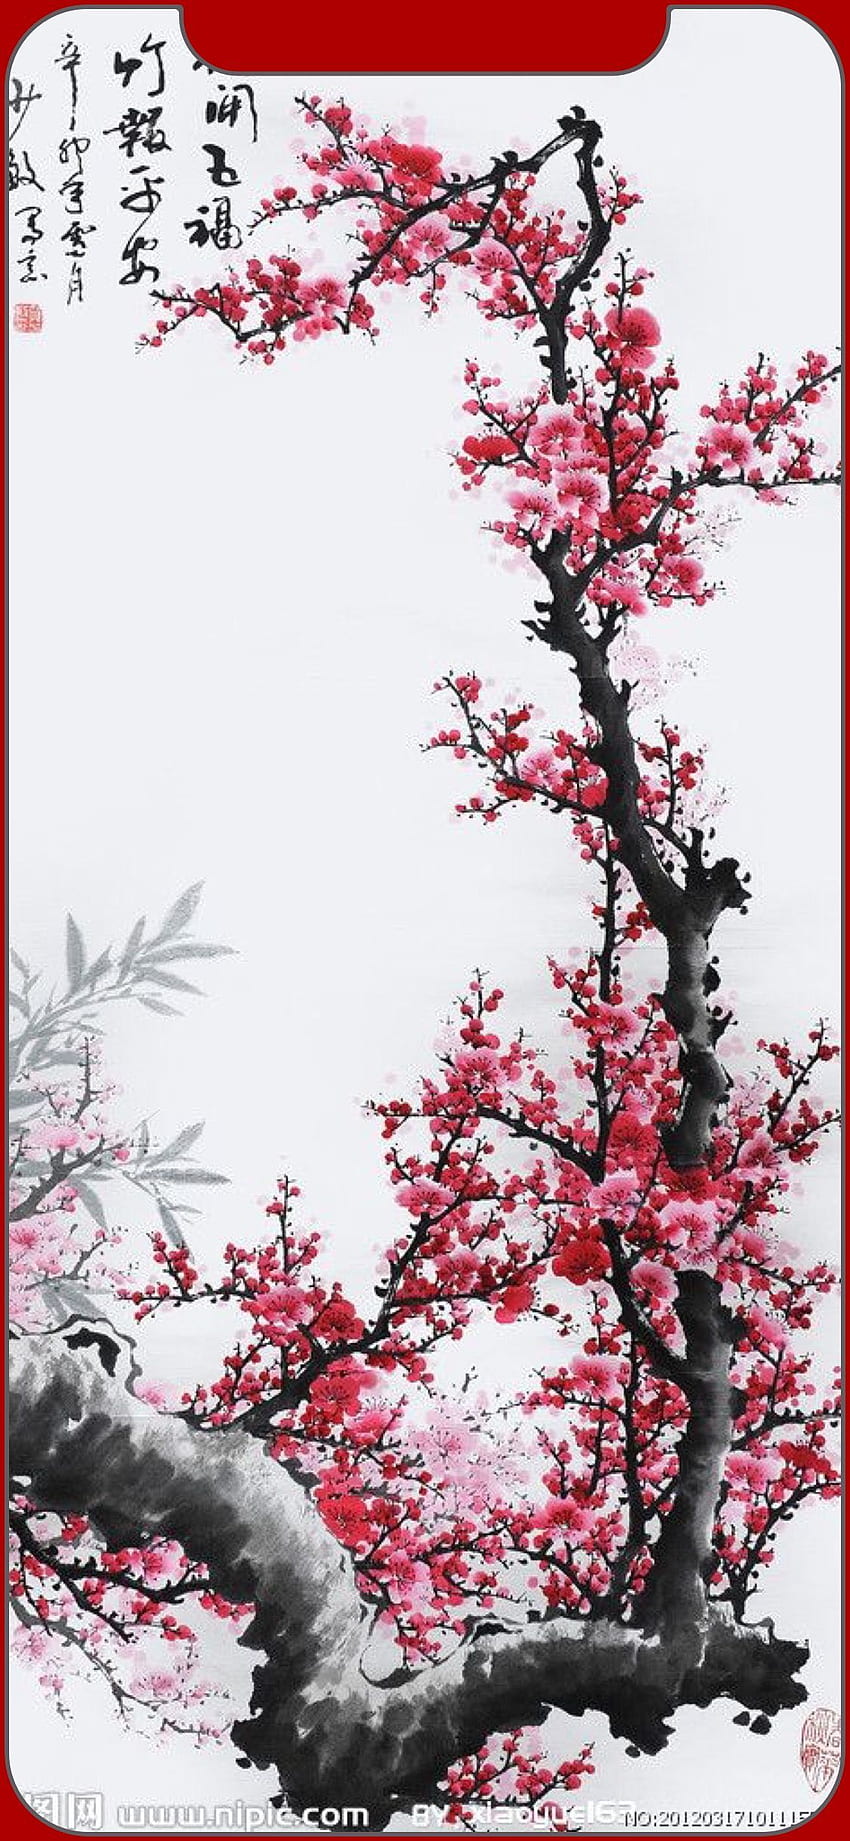 Pin di A K su iphone . Arte asiatica, Arte samurai, Arte che ispira, Traditional Japanese Art iPhone HD phone wallpaper